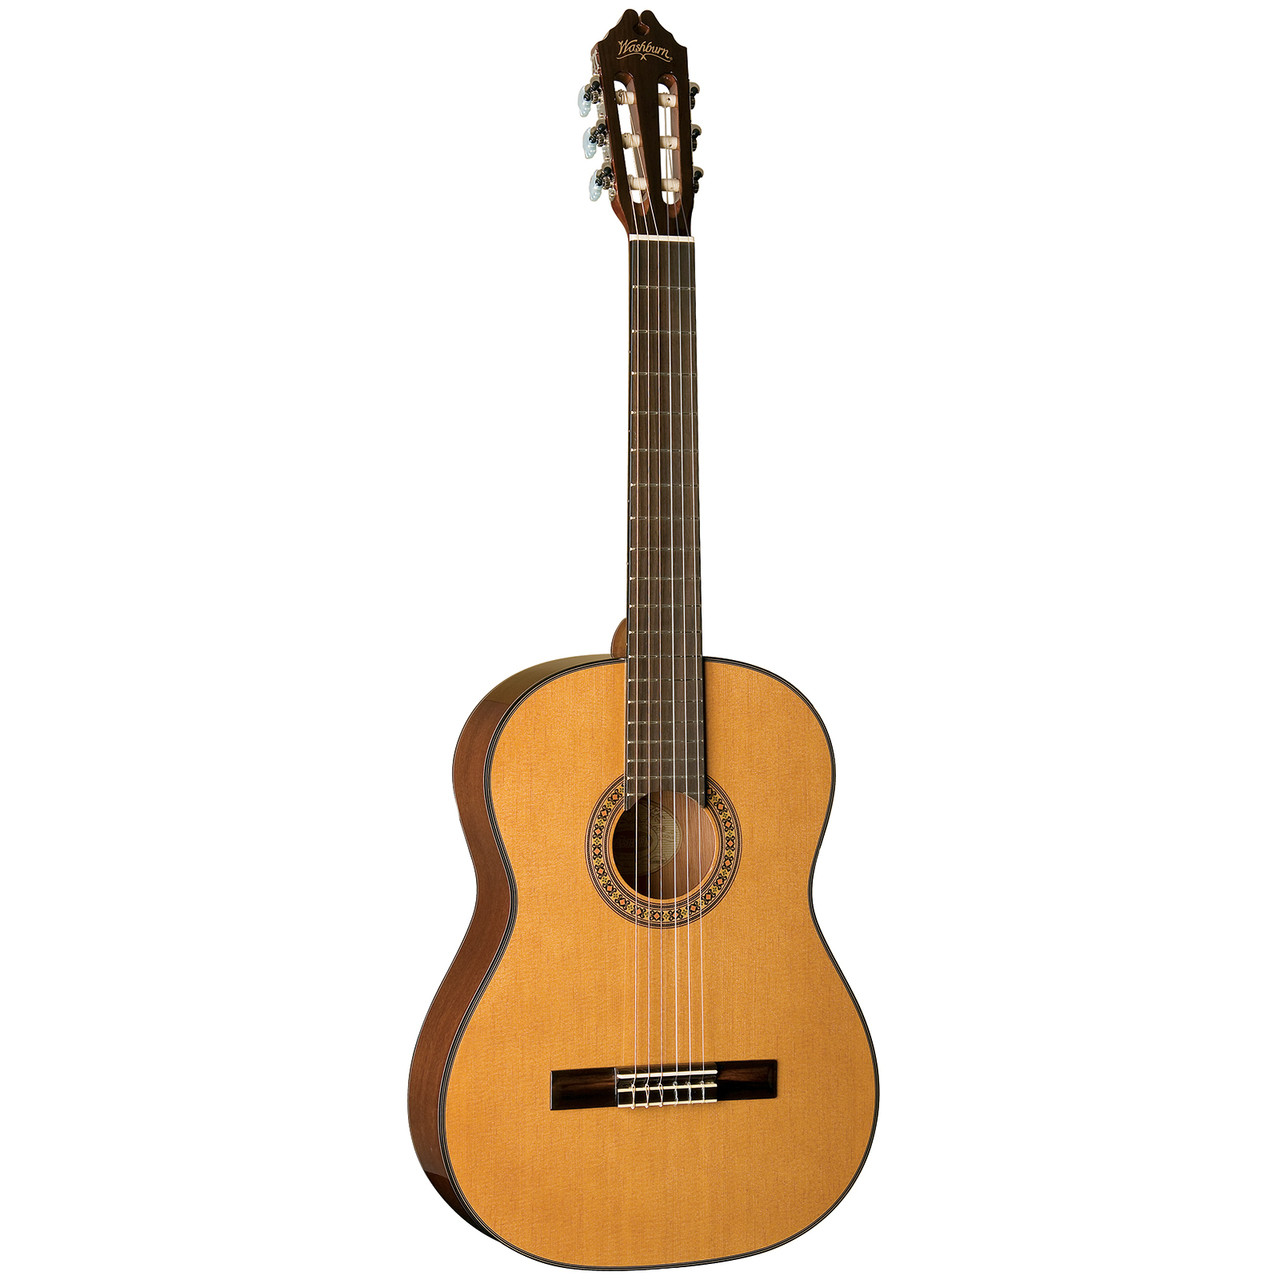 Oasis® Titanium Nylon Classical Guitar Strings